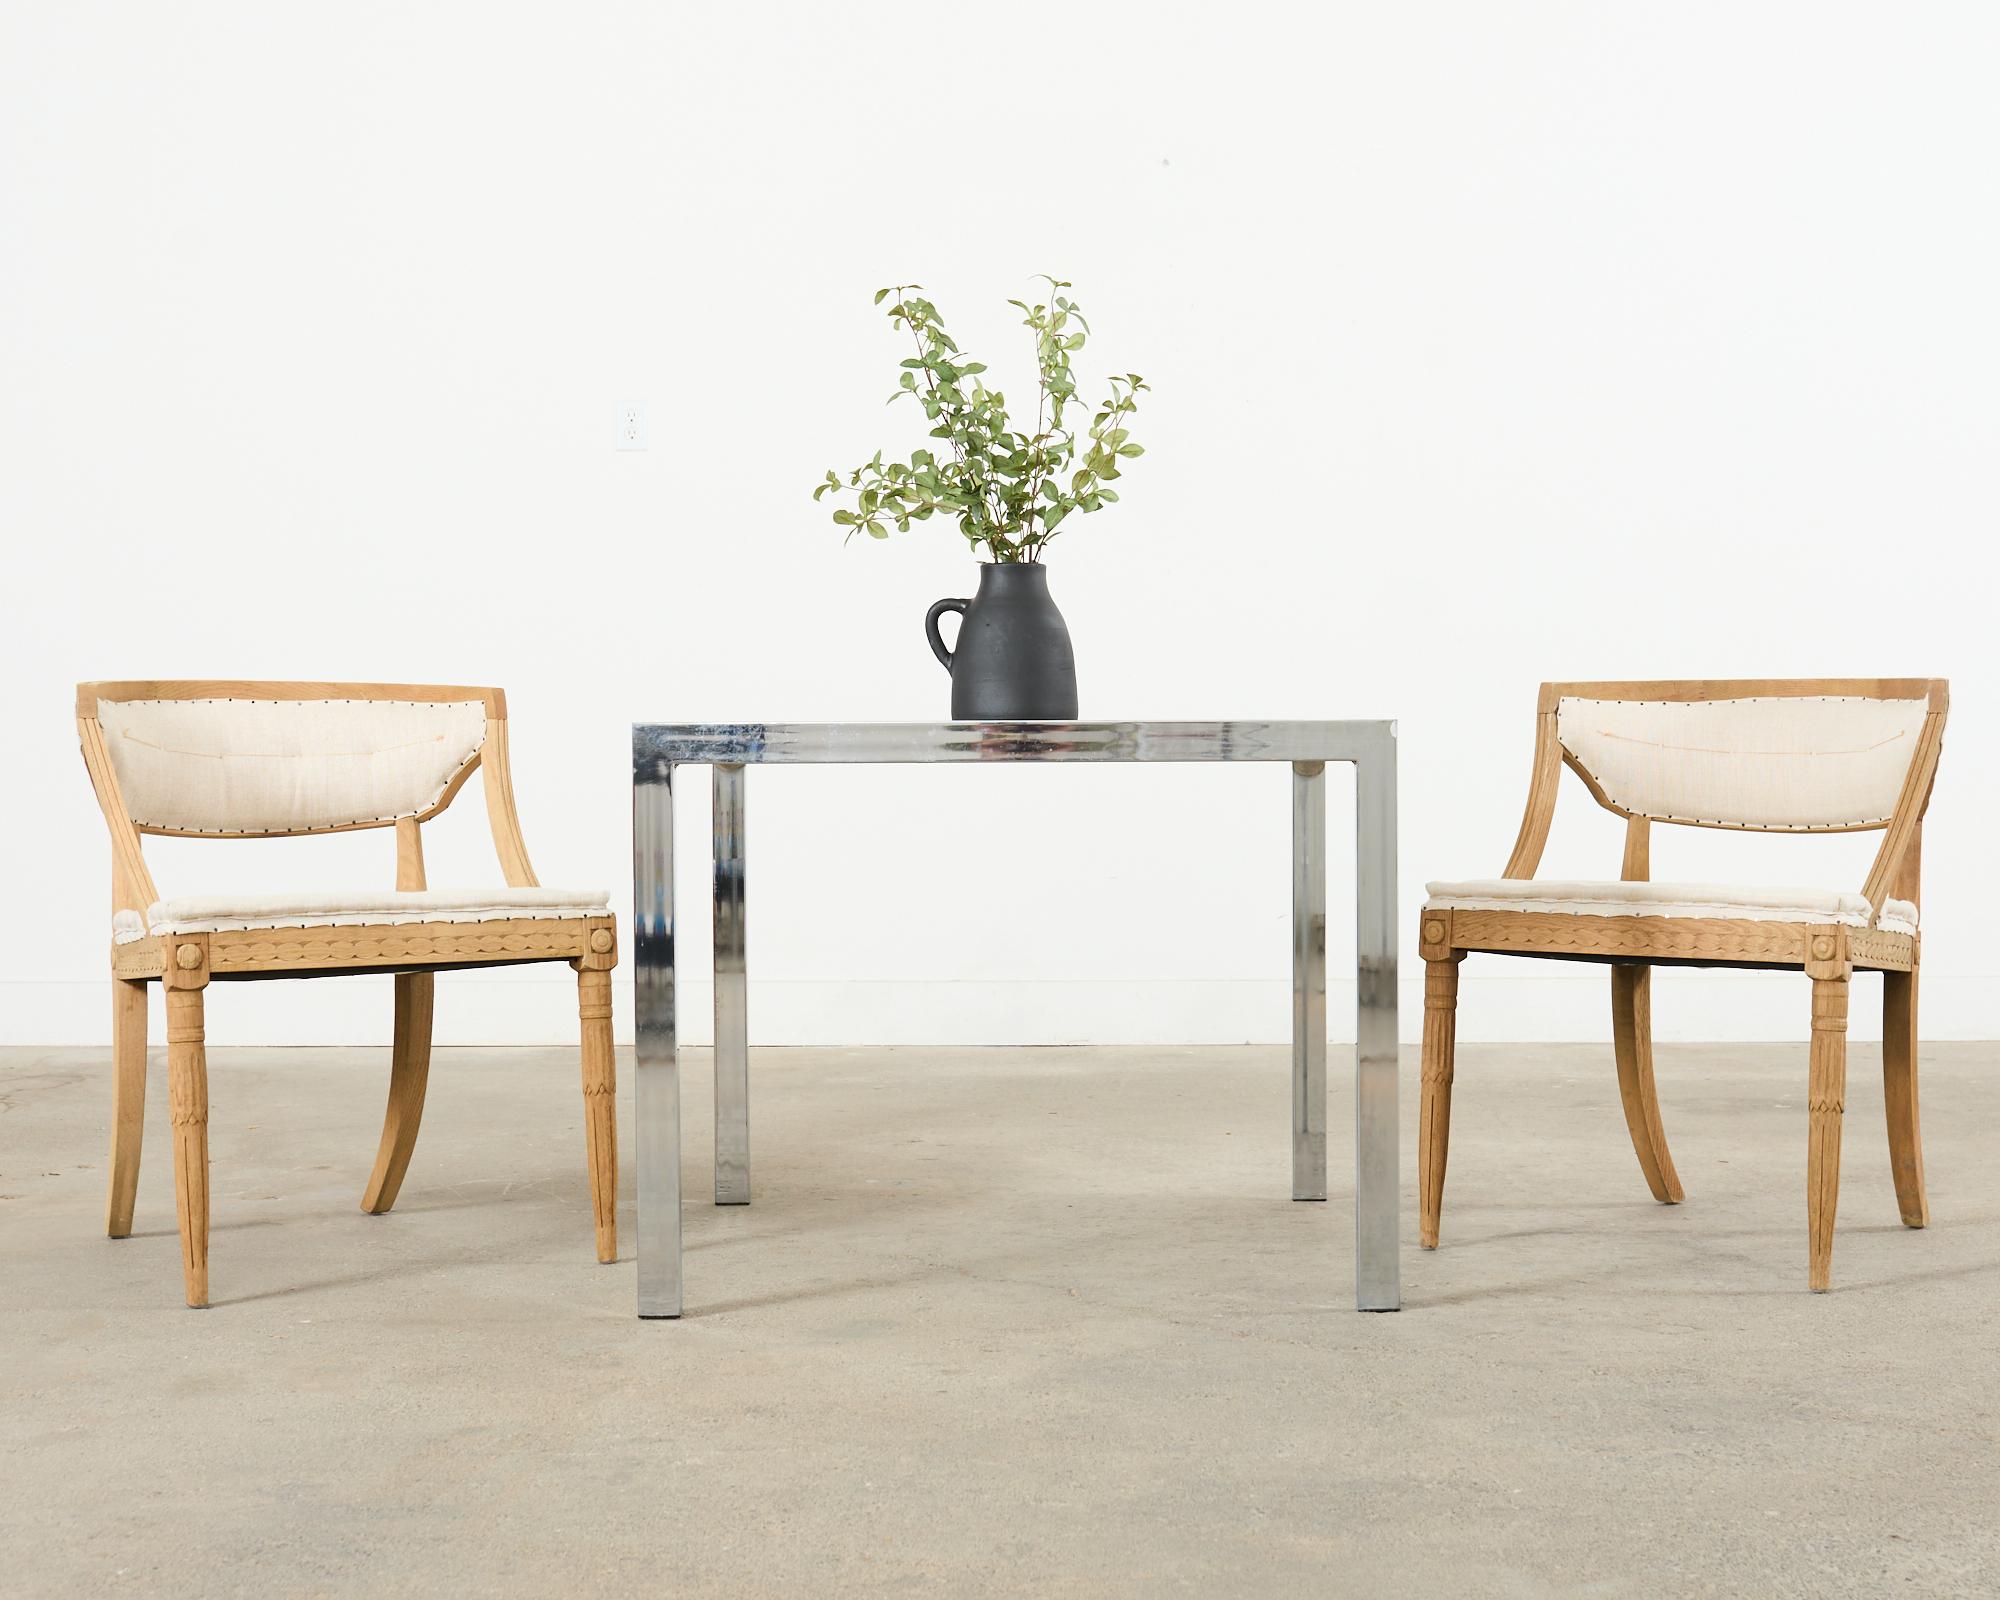 Ensemble de quatre chaises de salle à manger déconstruites de style suédois gustavien, recouvertes de tissu de mousseline et patinées par les intempéries. Les cadres en bois dur non fini sont très robustes et très travaillés, avec un dossier